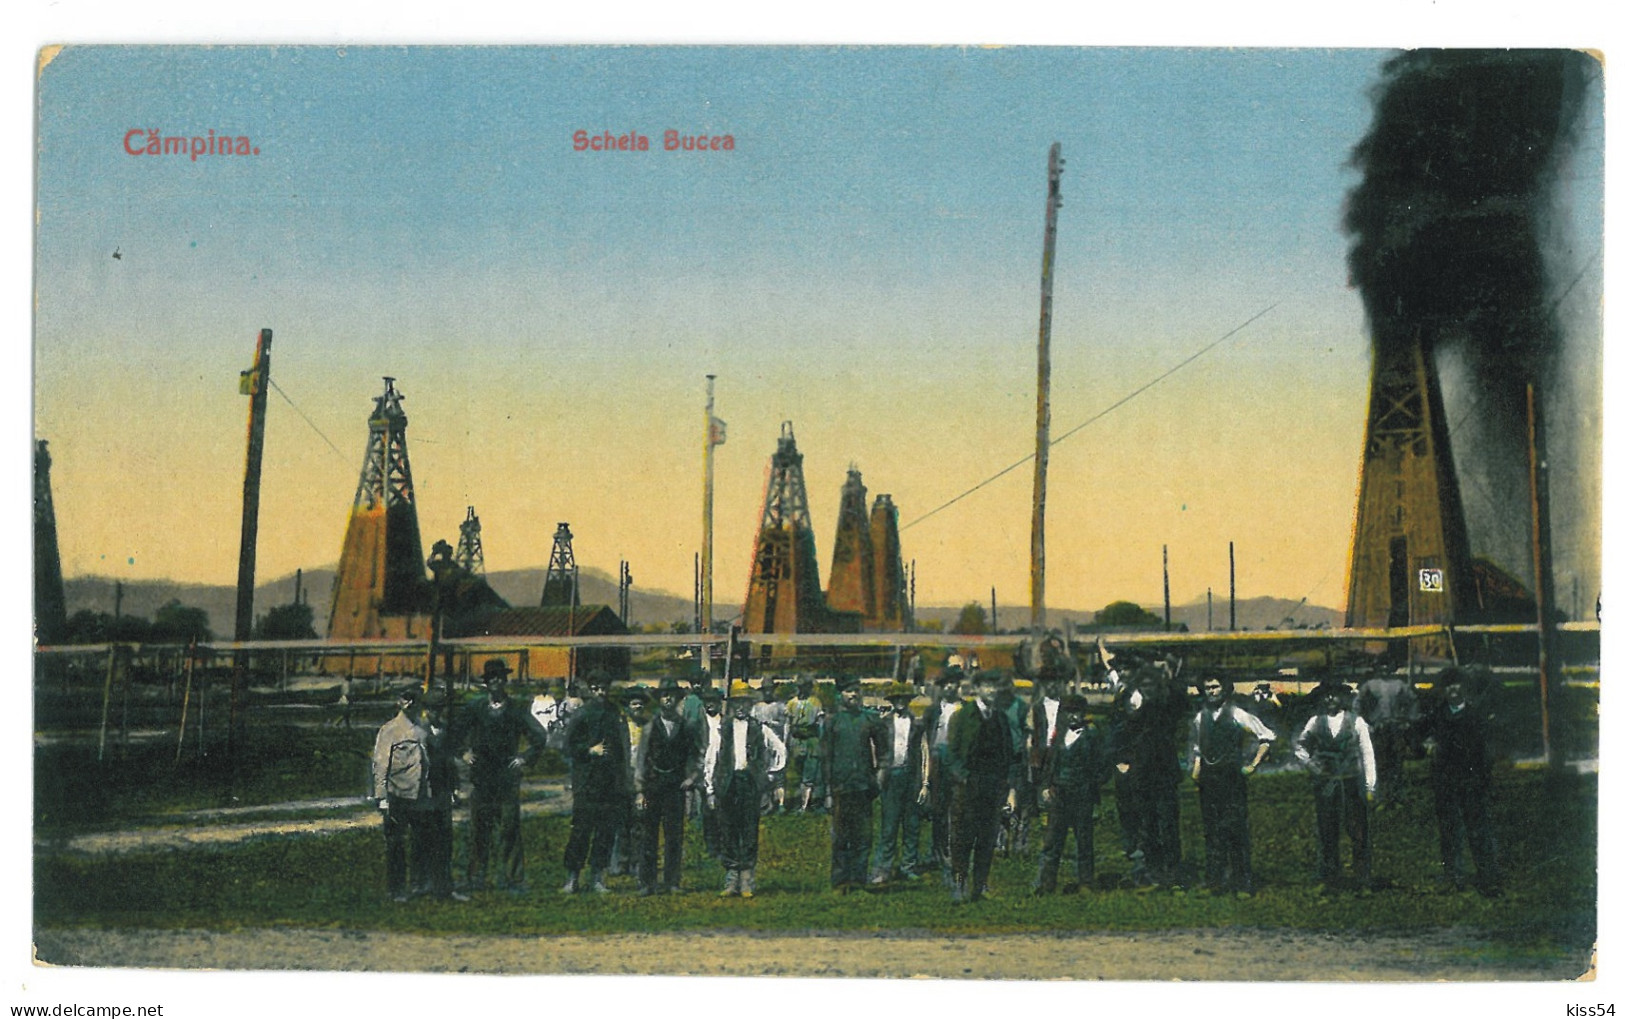 RO 39 - 22622 CAMPINA, Prahova, Oil Wells, Romania - Old Postcard - Unused - Rumänien